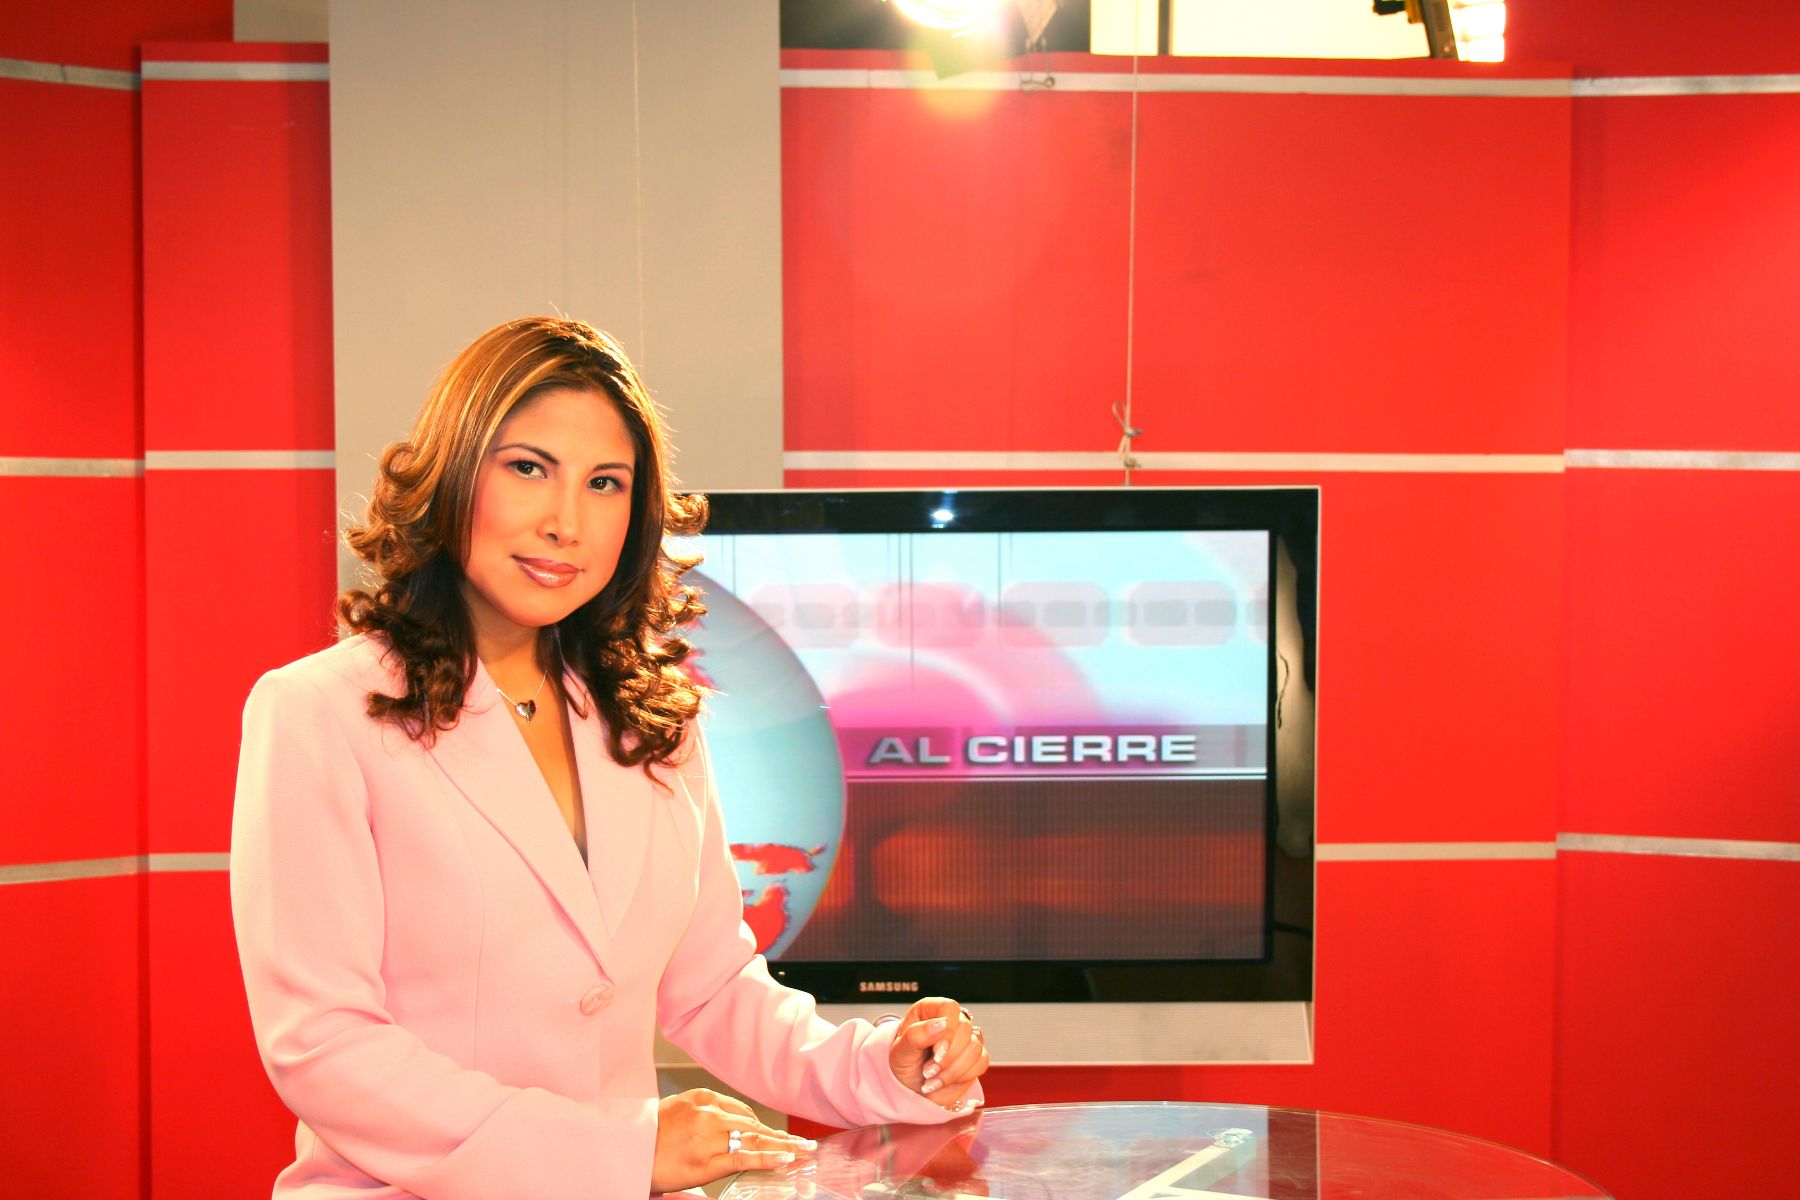 Programa Al Cierre (TV Perú), conducido por Jennifer Cerecida